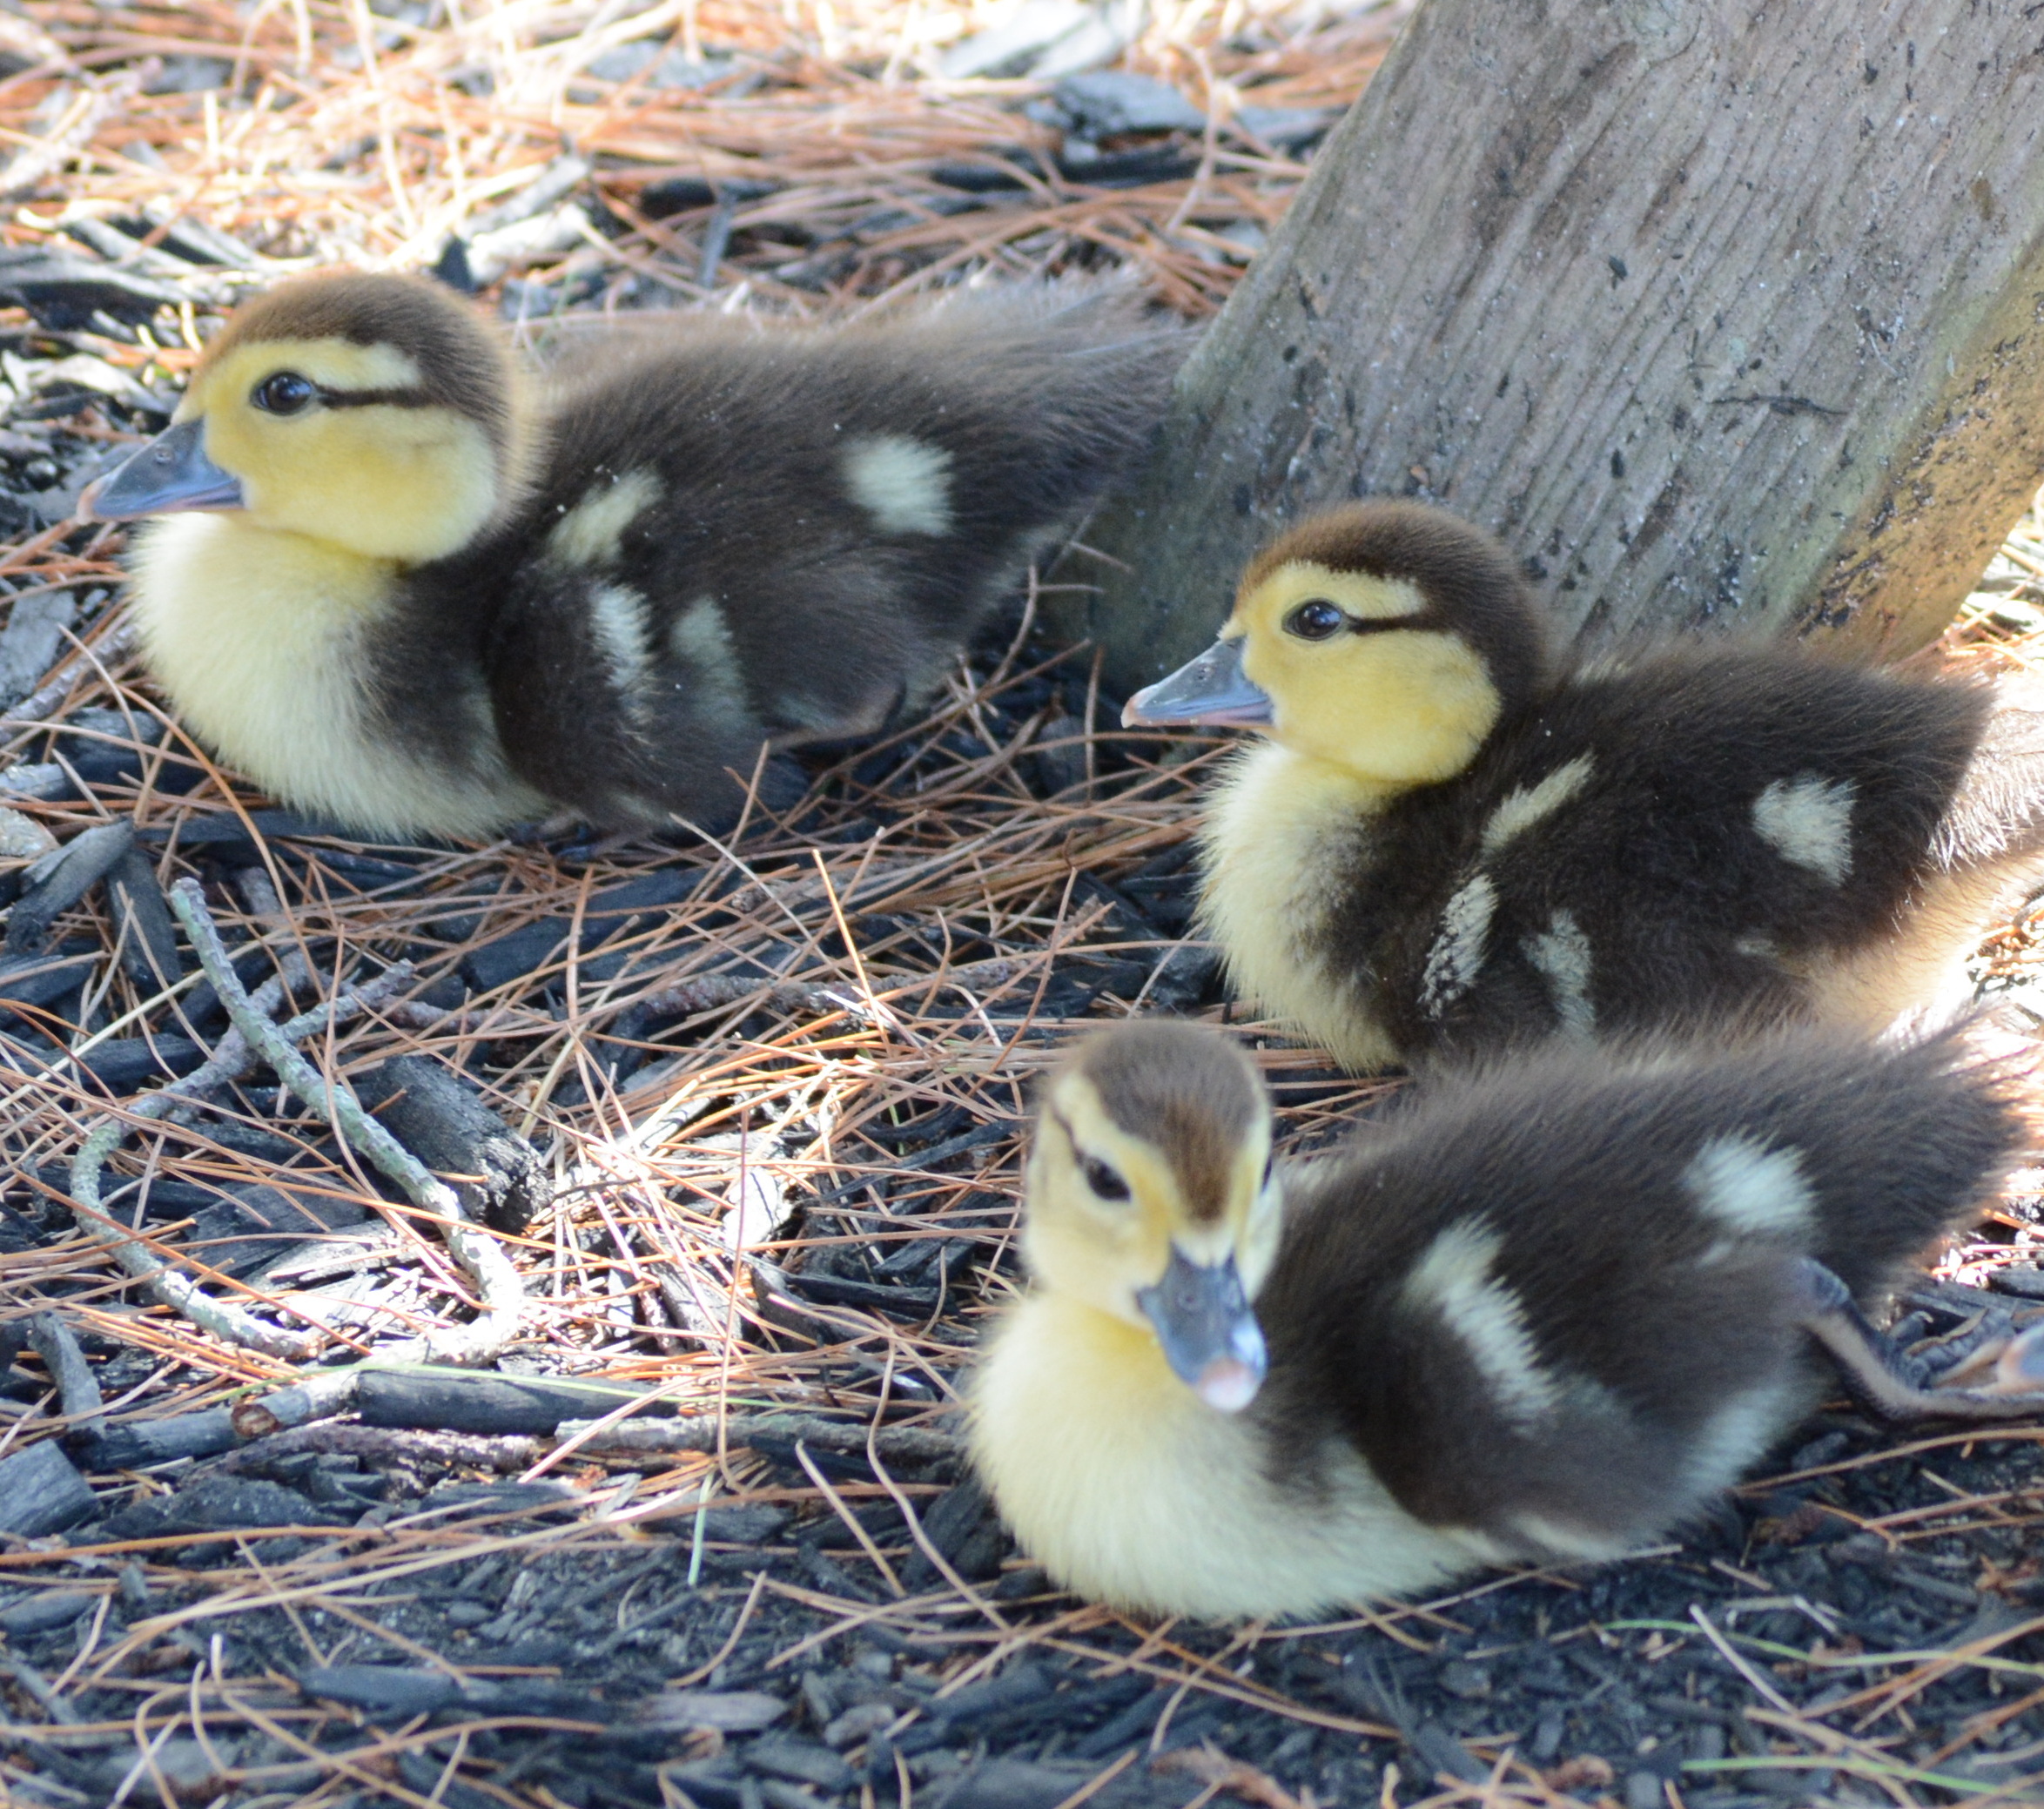 Ducklings, pato de corral y sus patitos